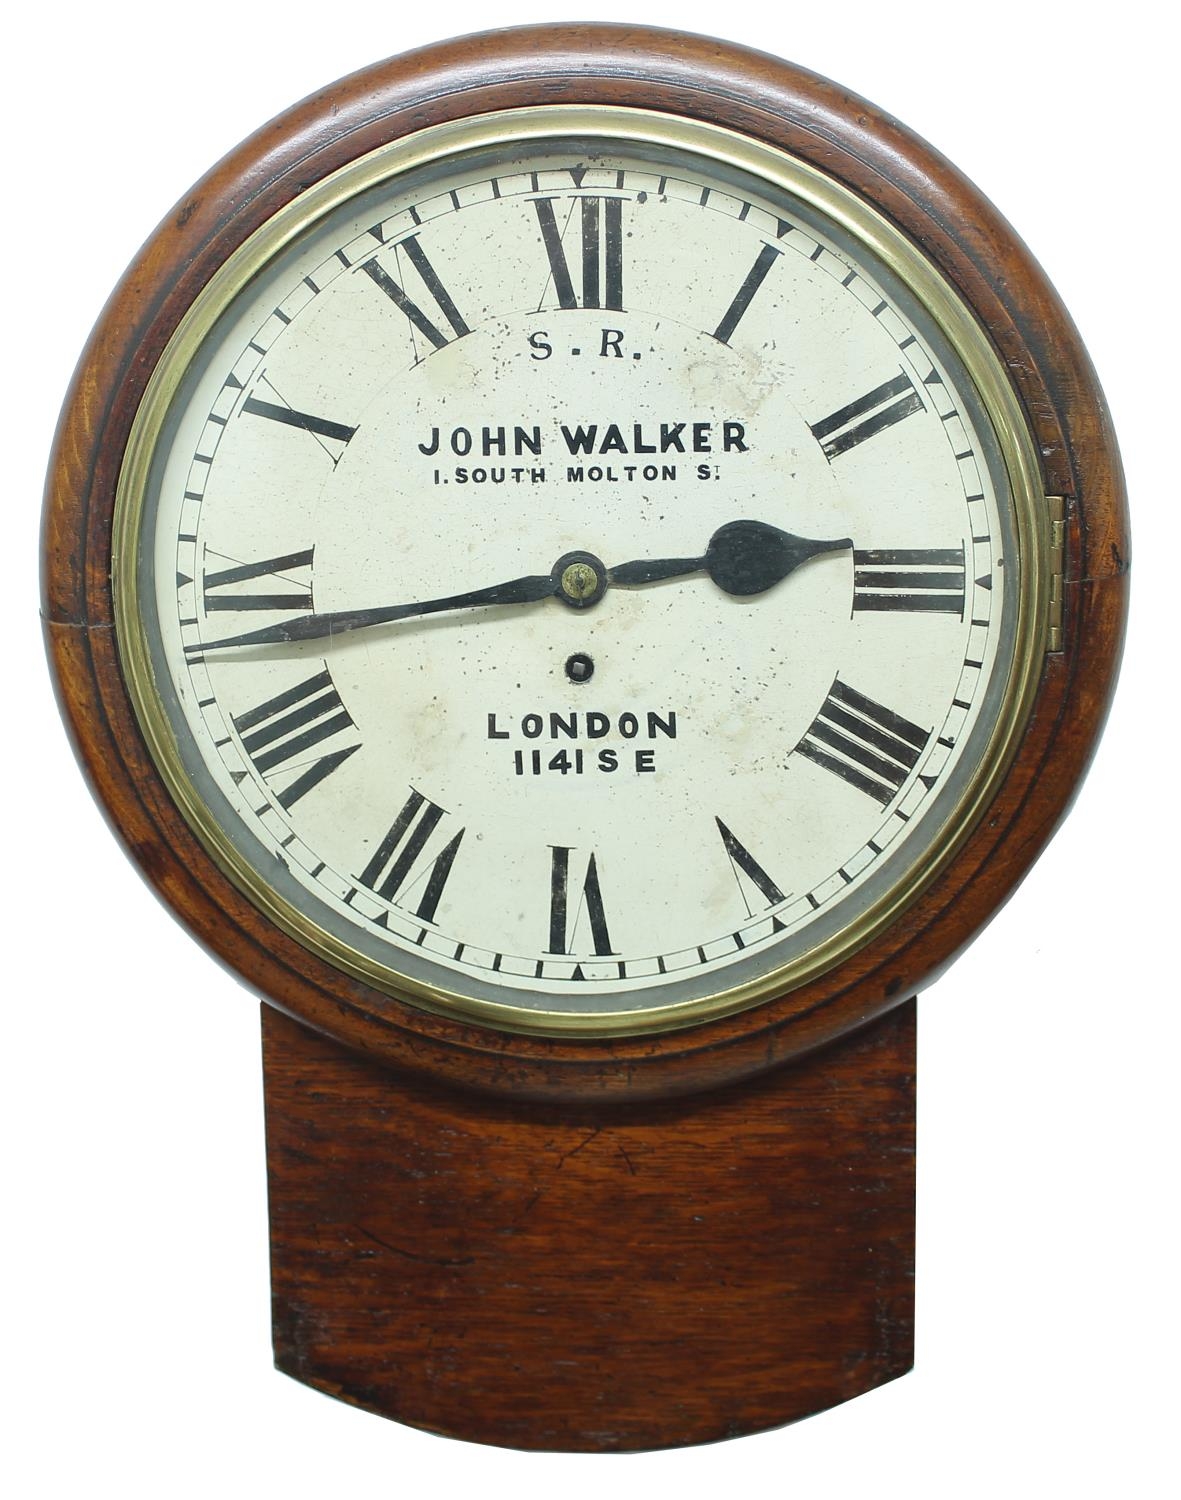 Southern Eastern Railway oak single fusee 12" drop dial  wall clock signed John Walker, 1. South